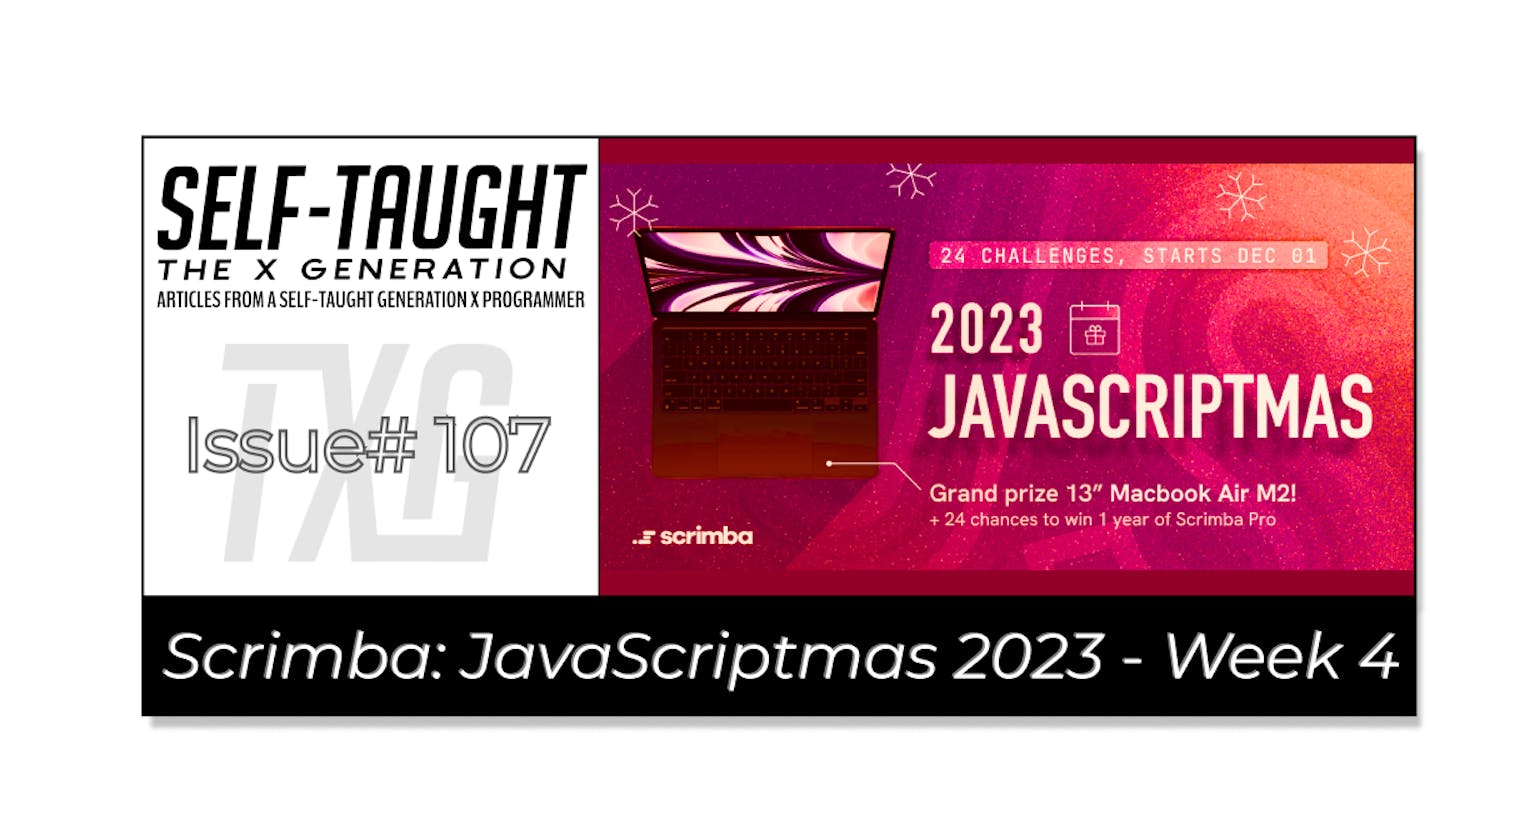 JavaScriptmas 2023 - Week 4